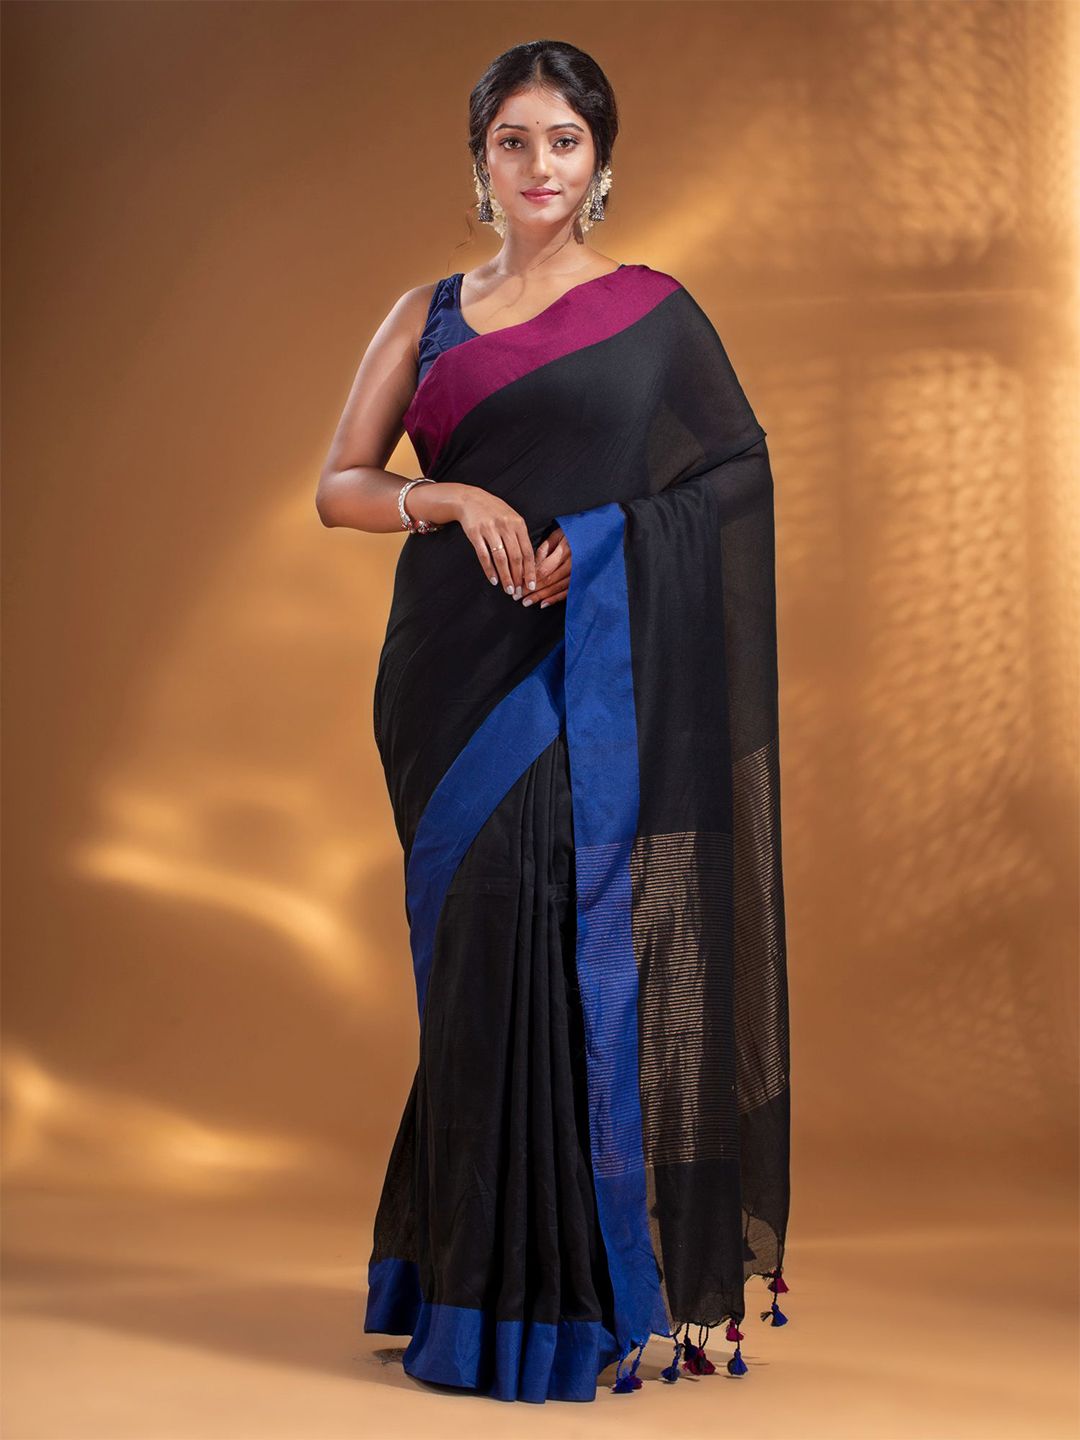 Arhi Black & Blue Woven Design Pure Cotton Saree Price in India